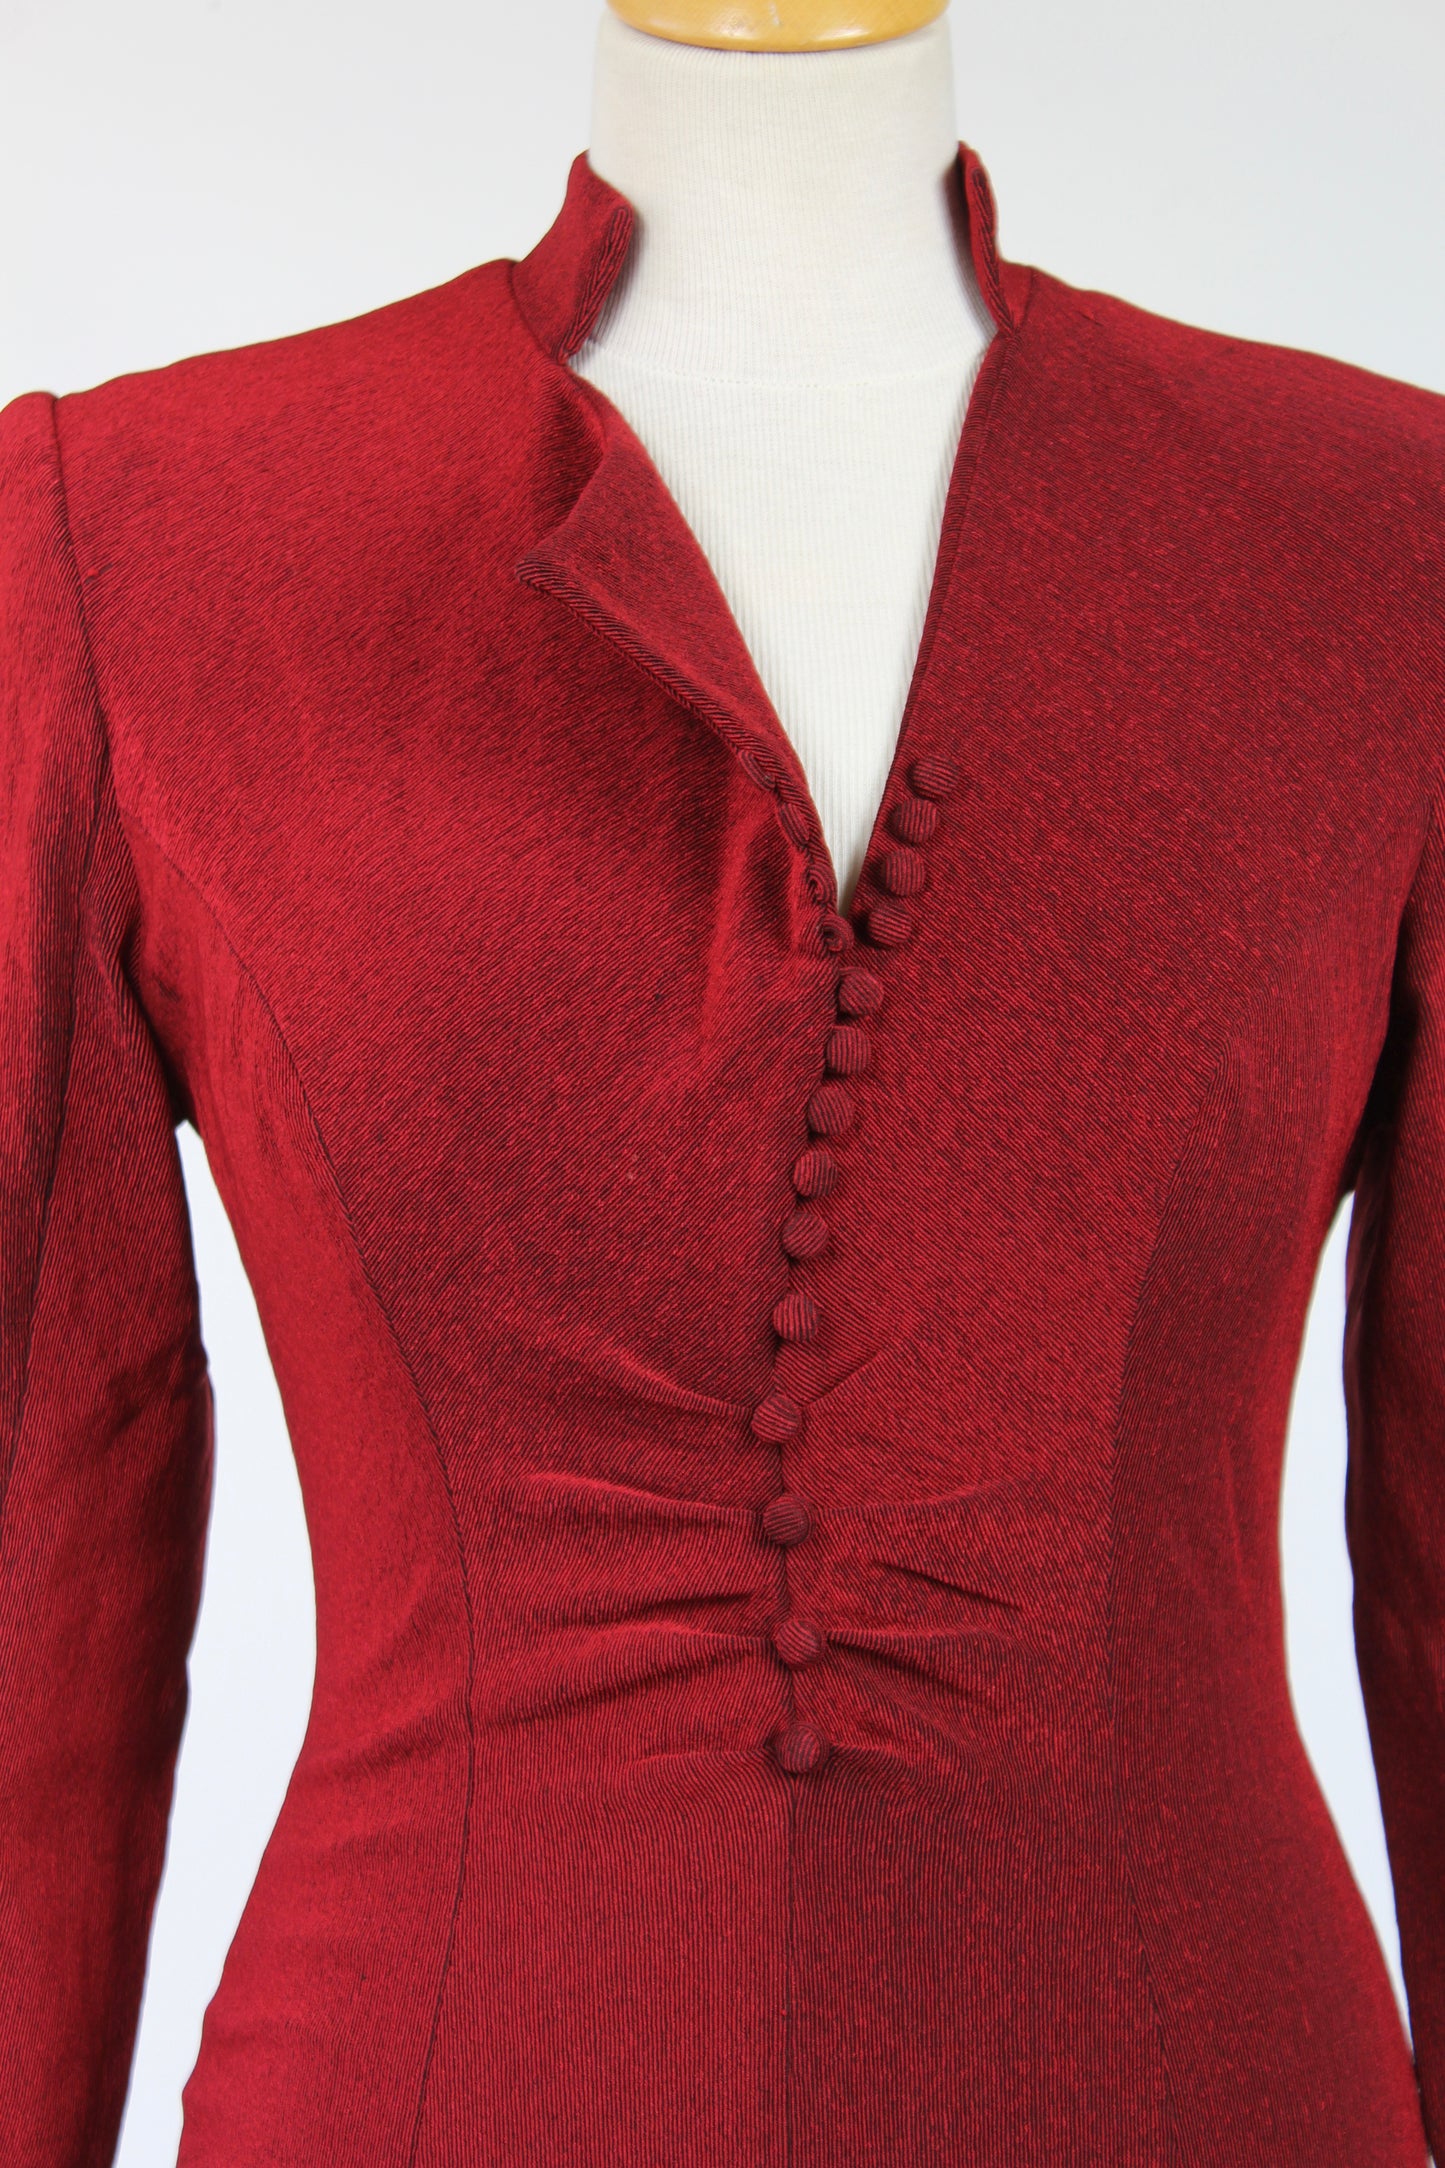 Robe vintage rouge foncée moulante grand décolleté